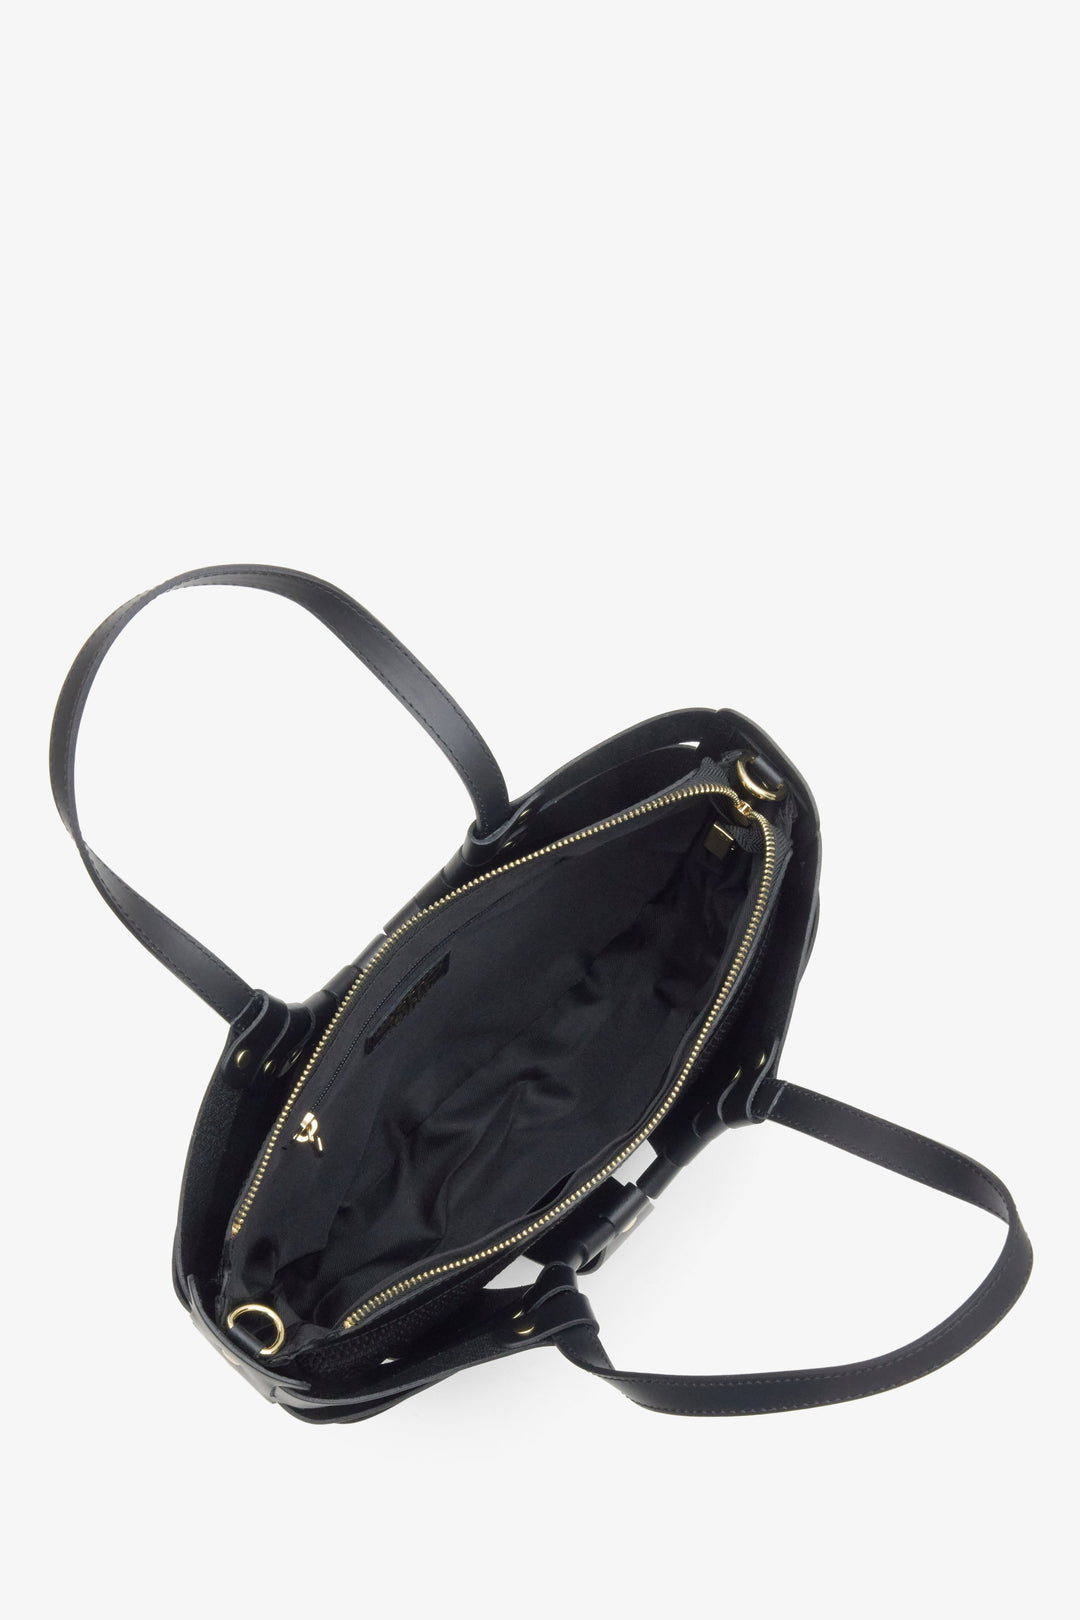 Czarna skórzana torebka damska typu koszyk marki Estro - prezentacja wnętrza modelu.